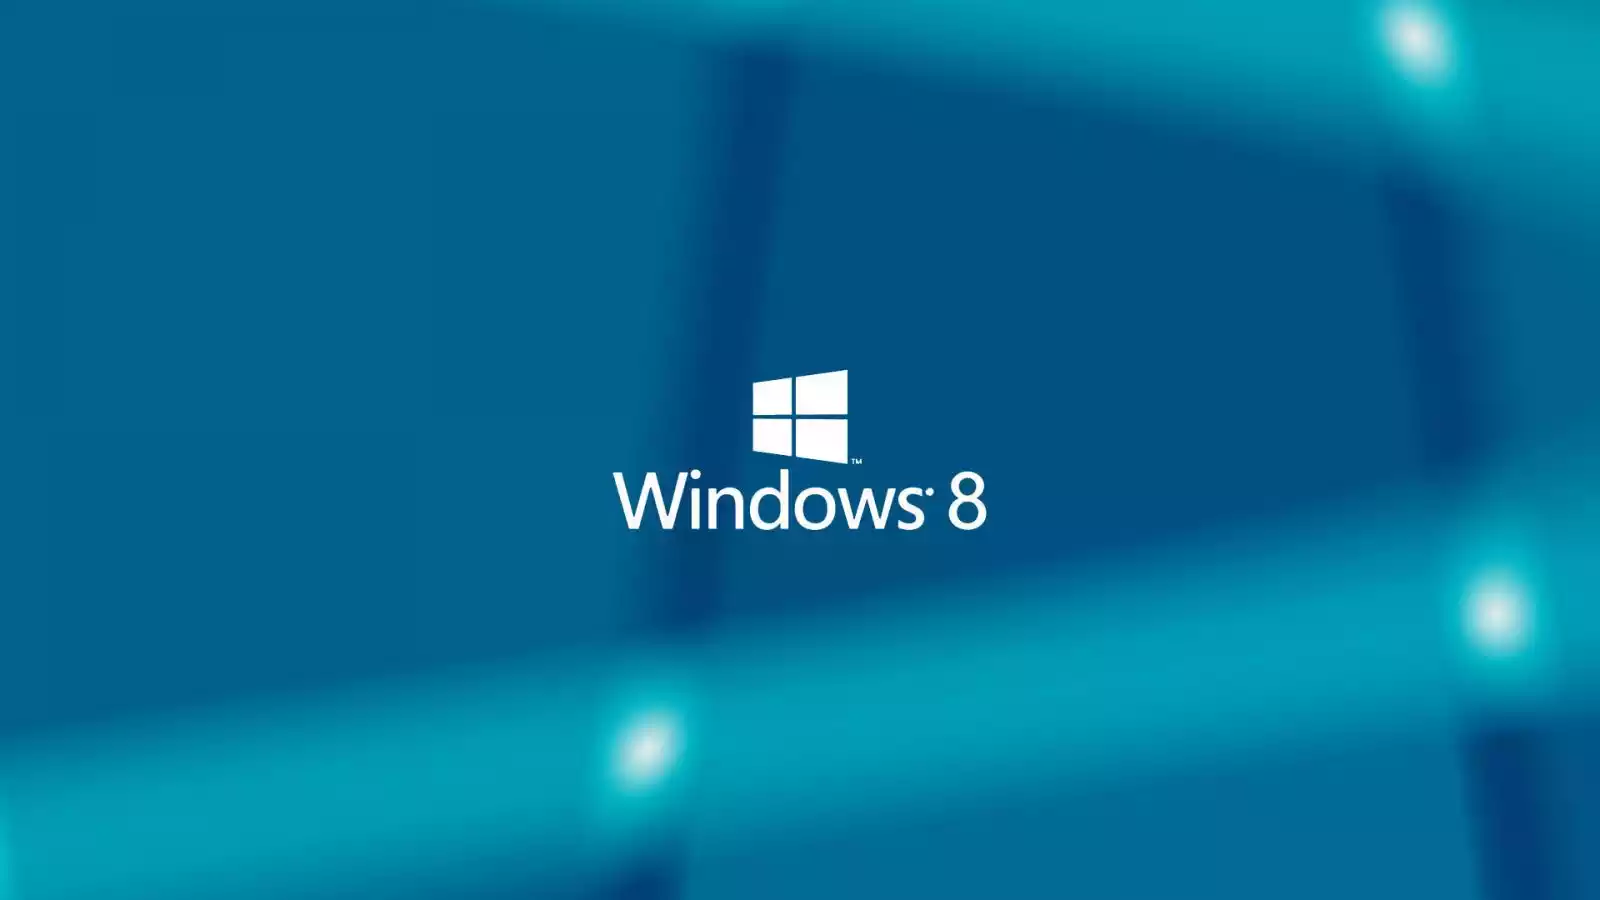 Sử dụng Microsoft Store để tải xuống các ứng dụng và trò chơi thú vị cho máy tính của bạn. Cửa hàng ứng dụng Microsoft có hàng ngàn ứng dụng từ các nhà phát triển hàng đầu trên thế giới, và luôn cập nhật mới nhất để mang đến cho bạn những trải nghiệm tốt nhất trên Windows.